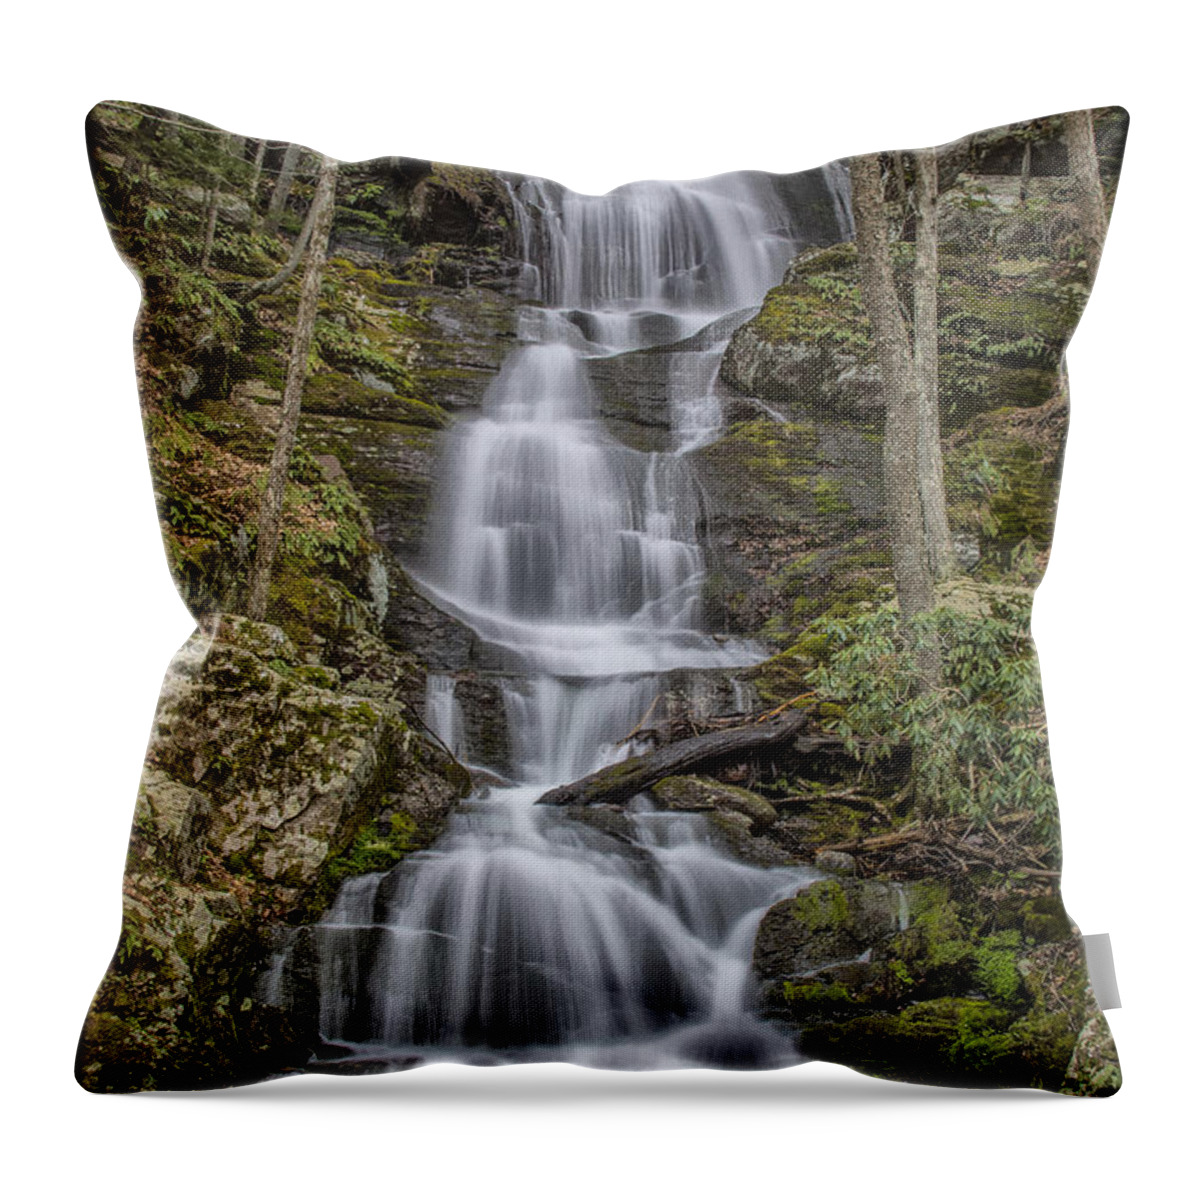 Waterfall Throw Pillow featuring the photograph Buttermilk Falls by Erika Fawcett